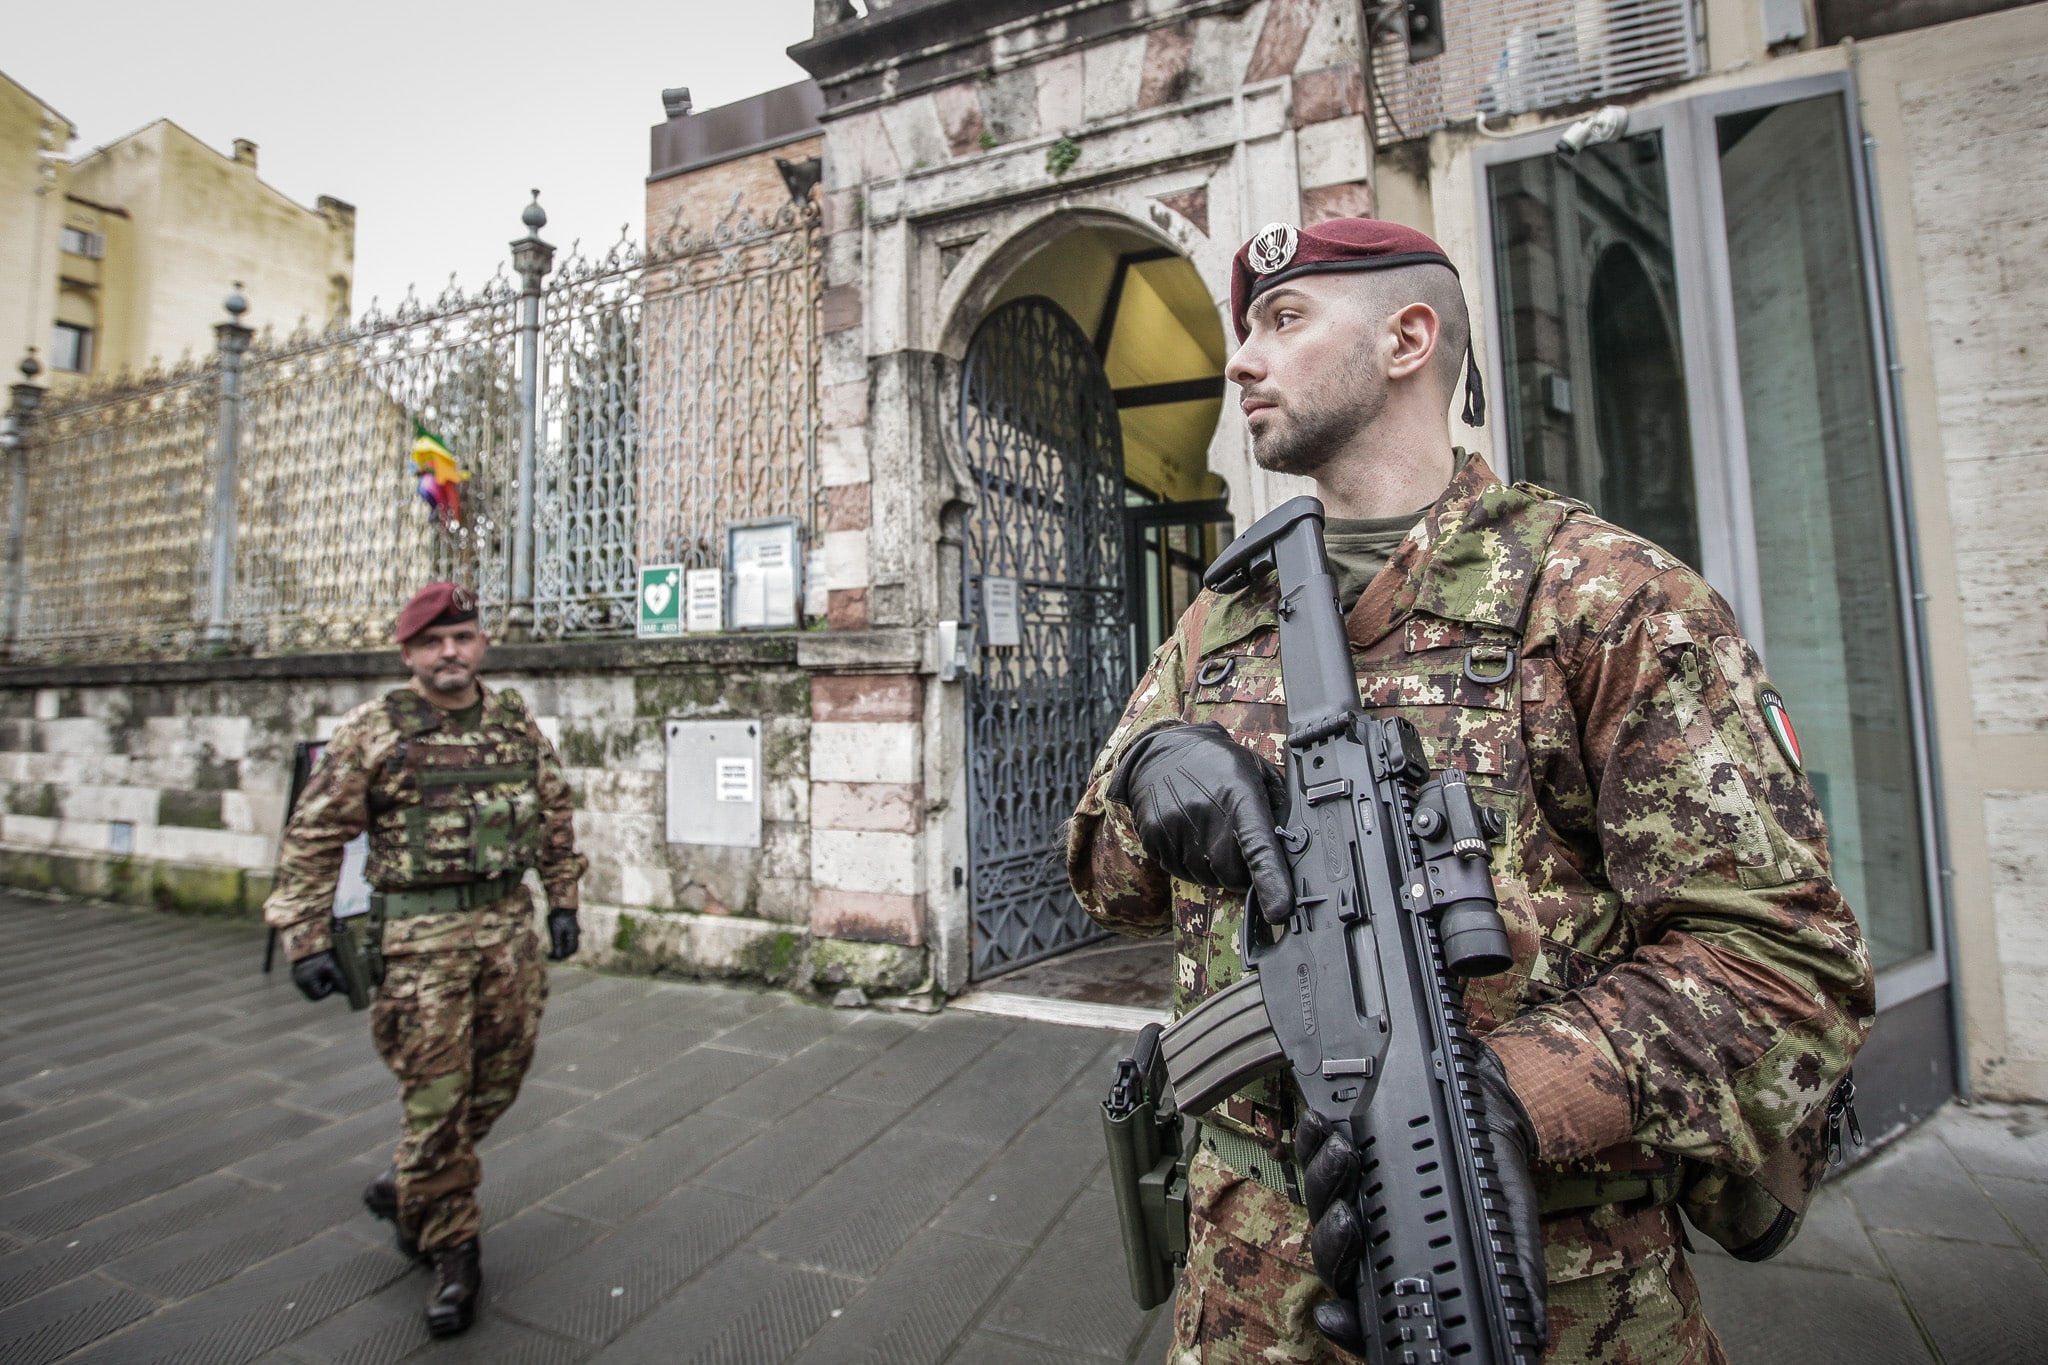 Arrivano i militari a Ferrara, Monza e Pisa: torna l’operazione Strade sicure